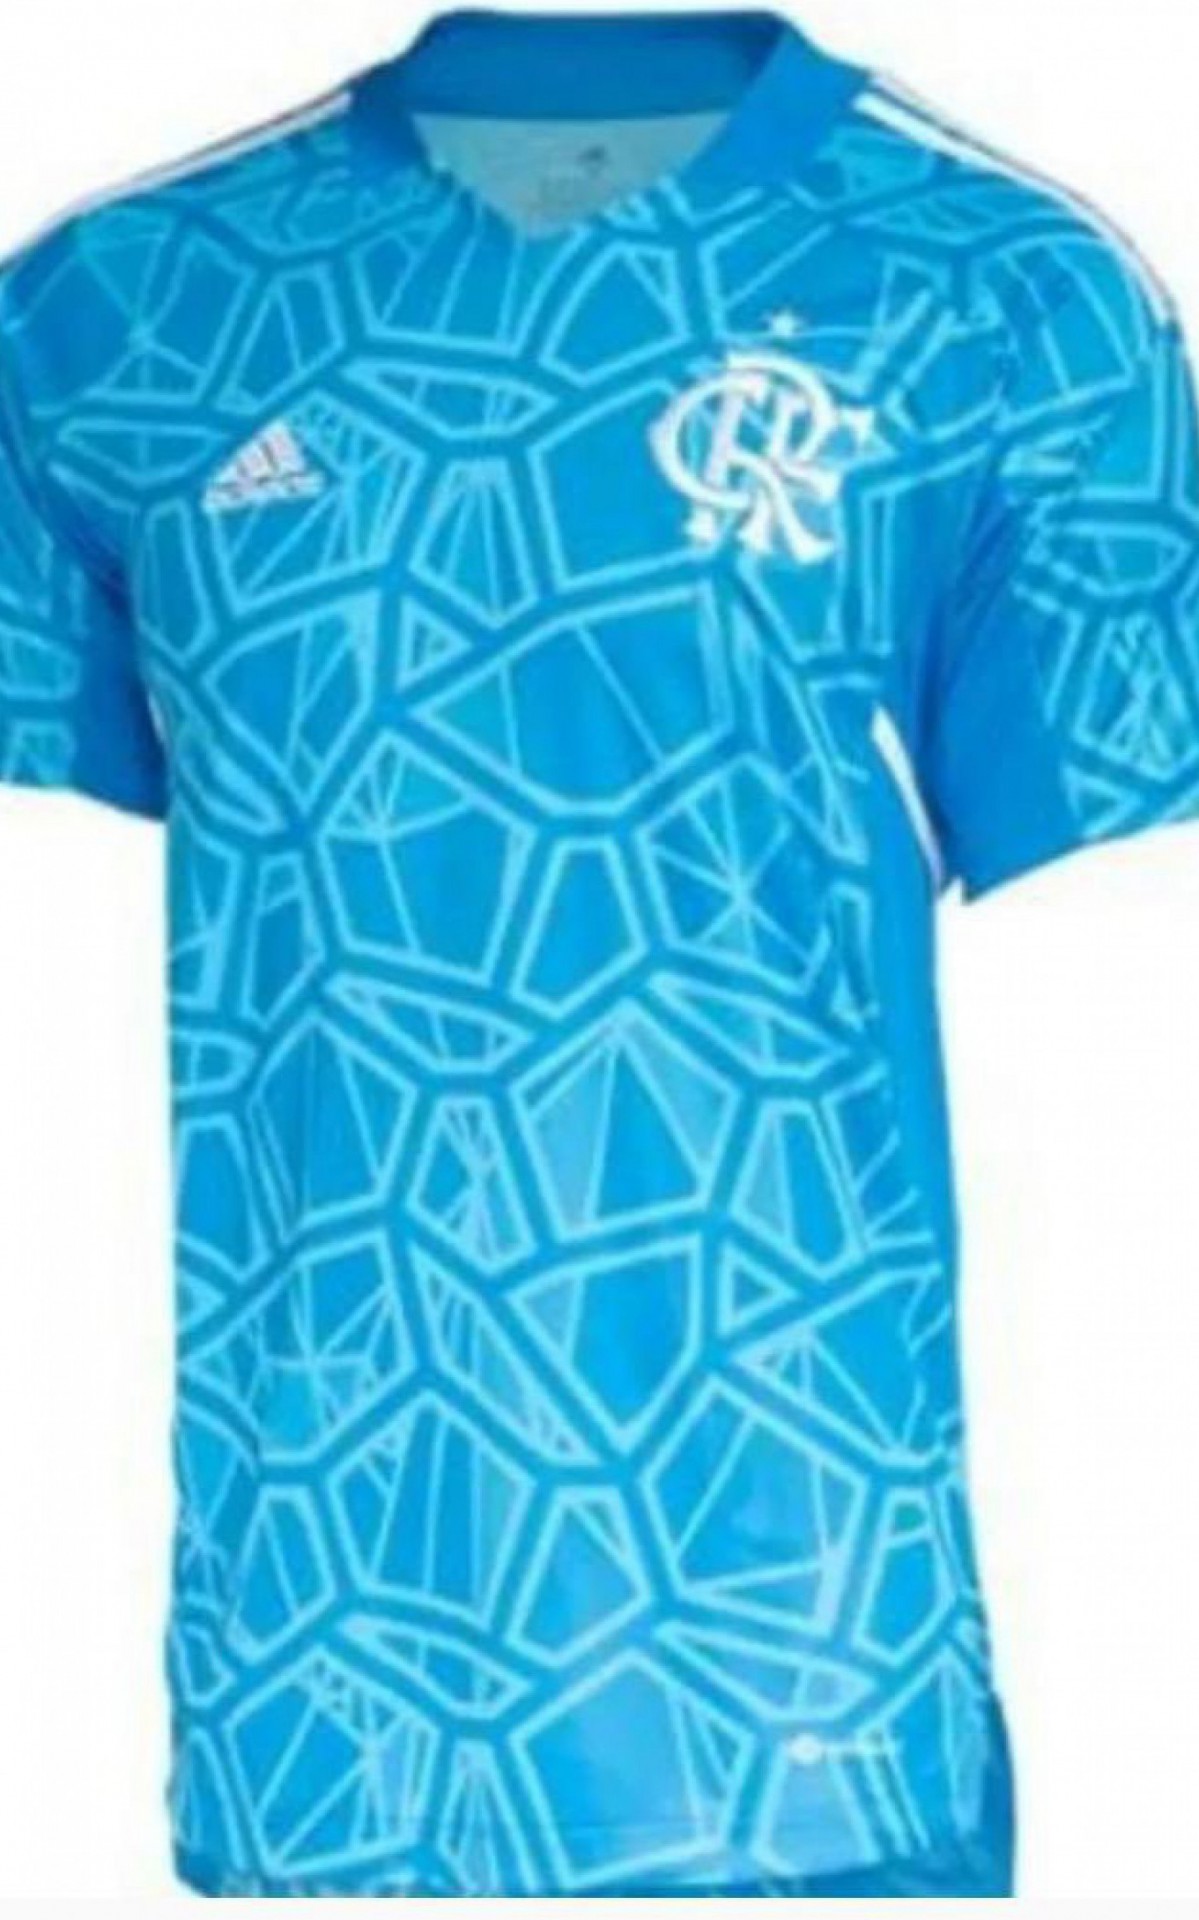 Nova camisa de goleiros do Flamengo - Reprodução